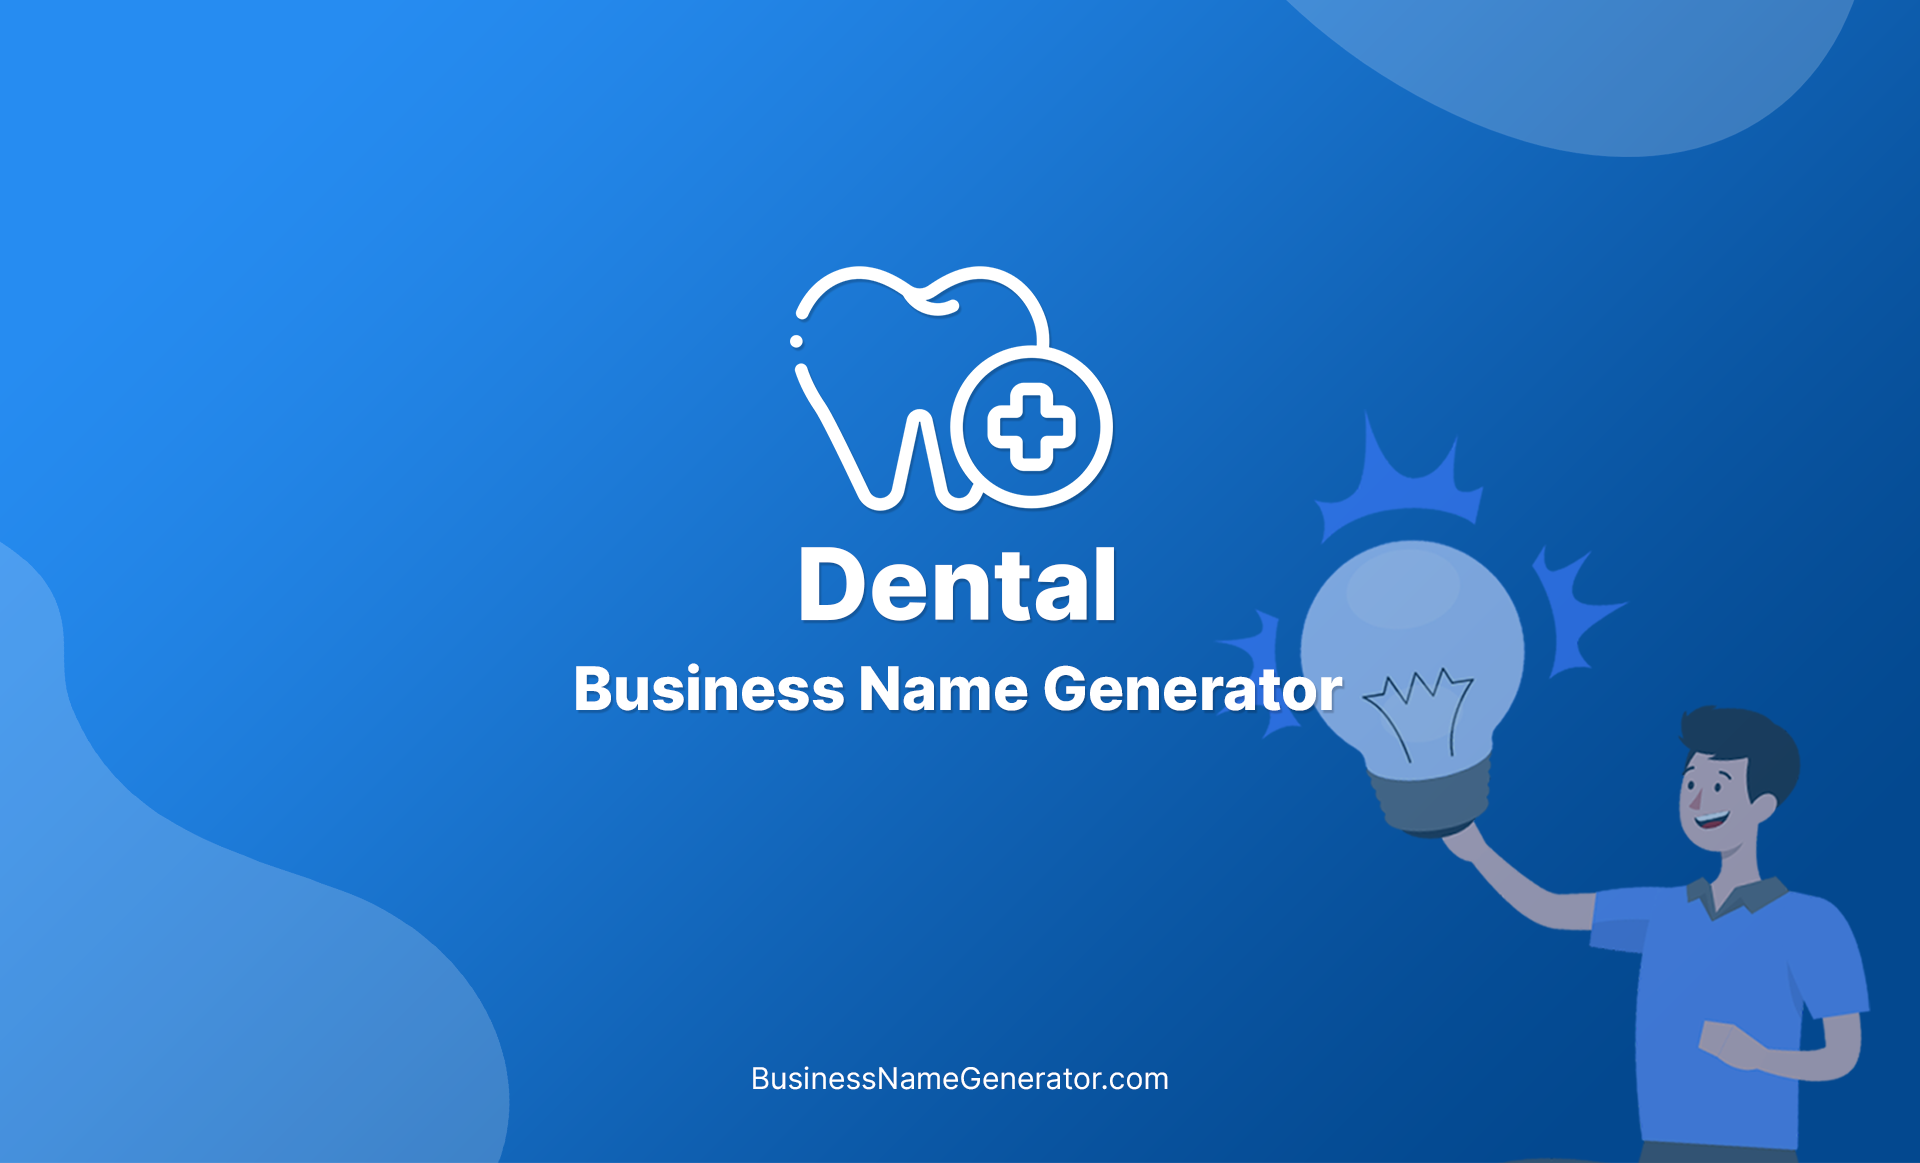 Dental Business Name Generator